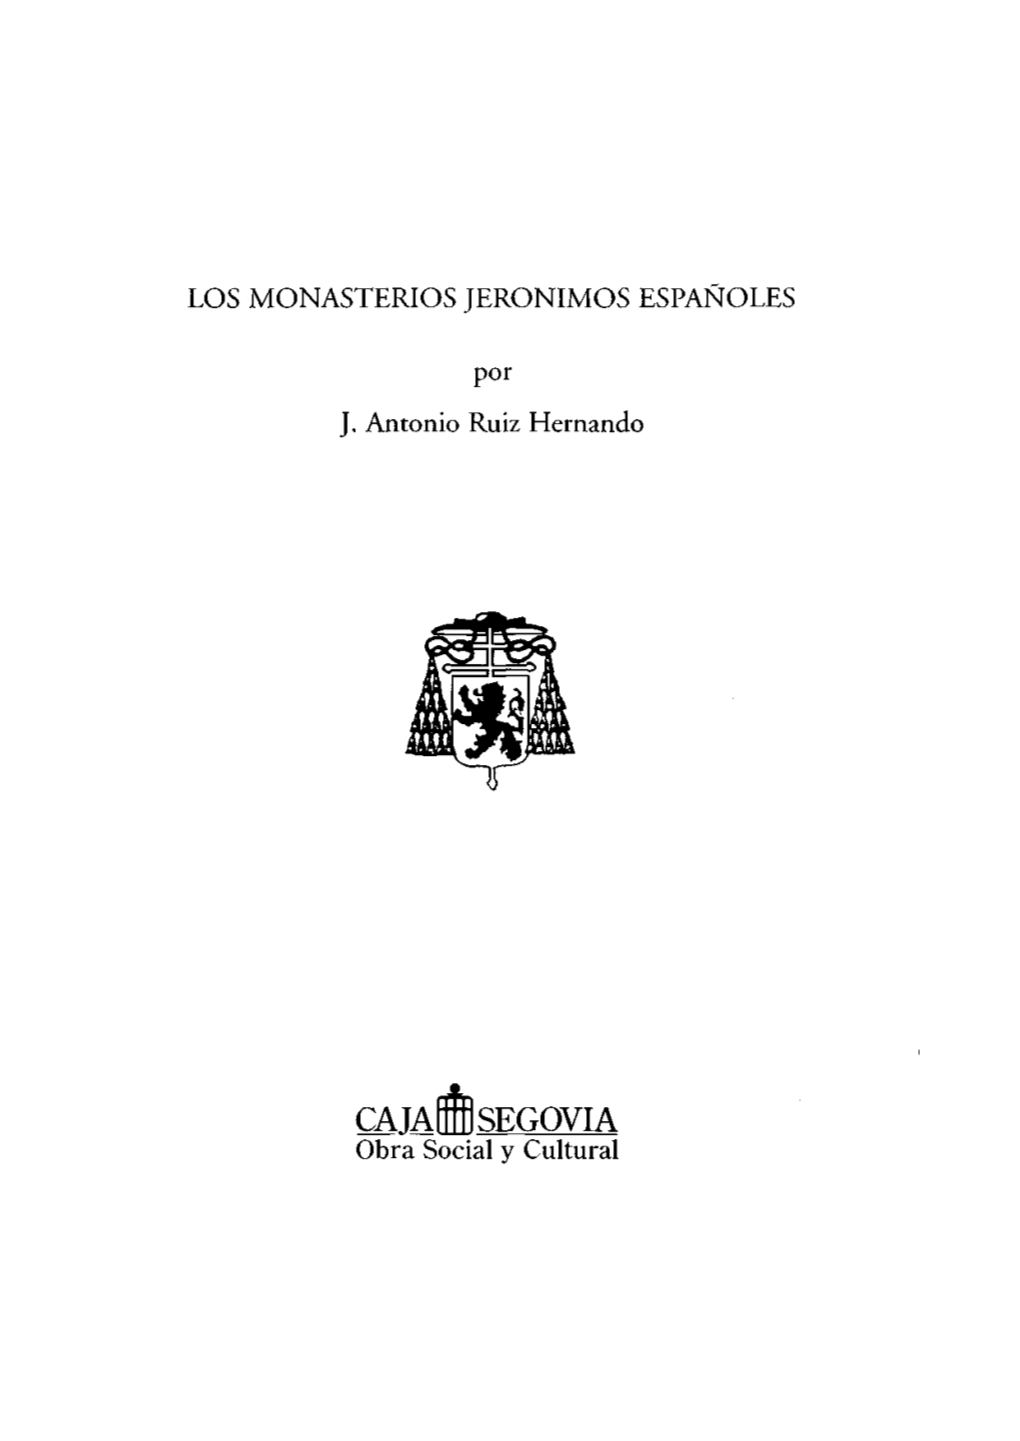 Los Monasterios Jerónimos Españoles